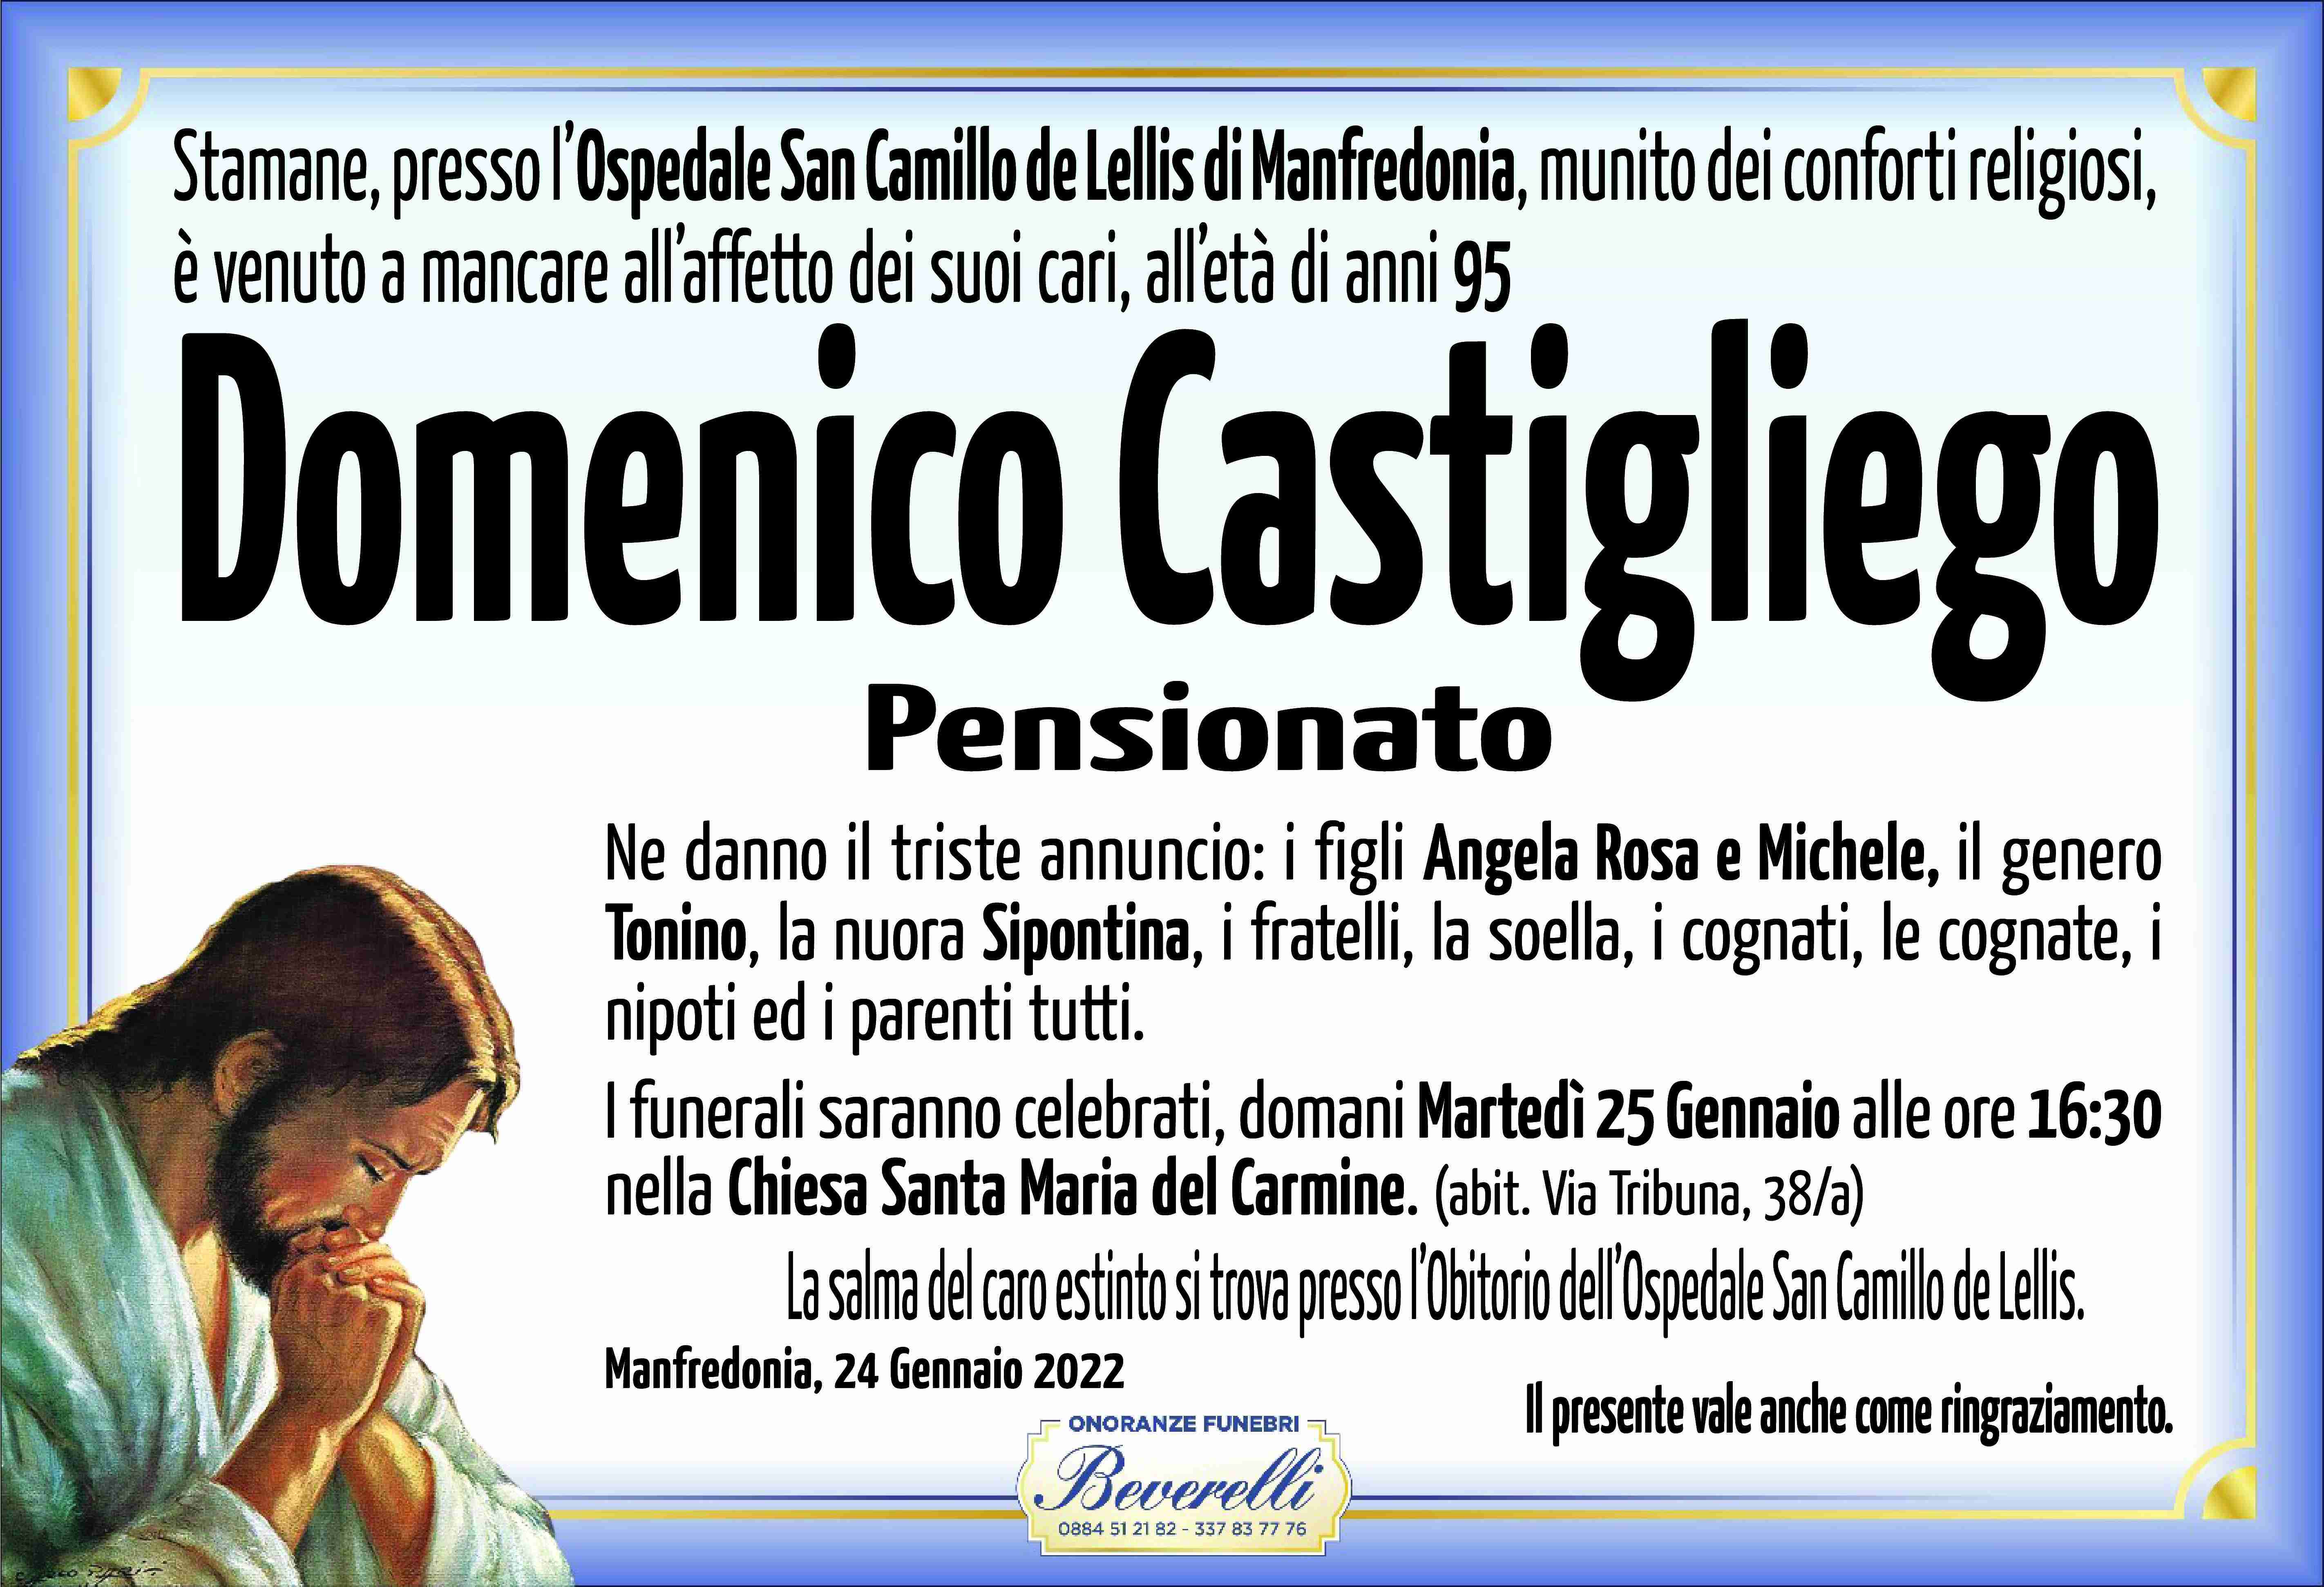 Domenico Castigliego